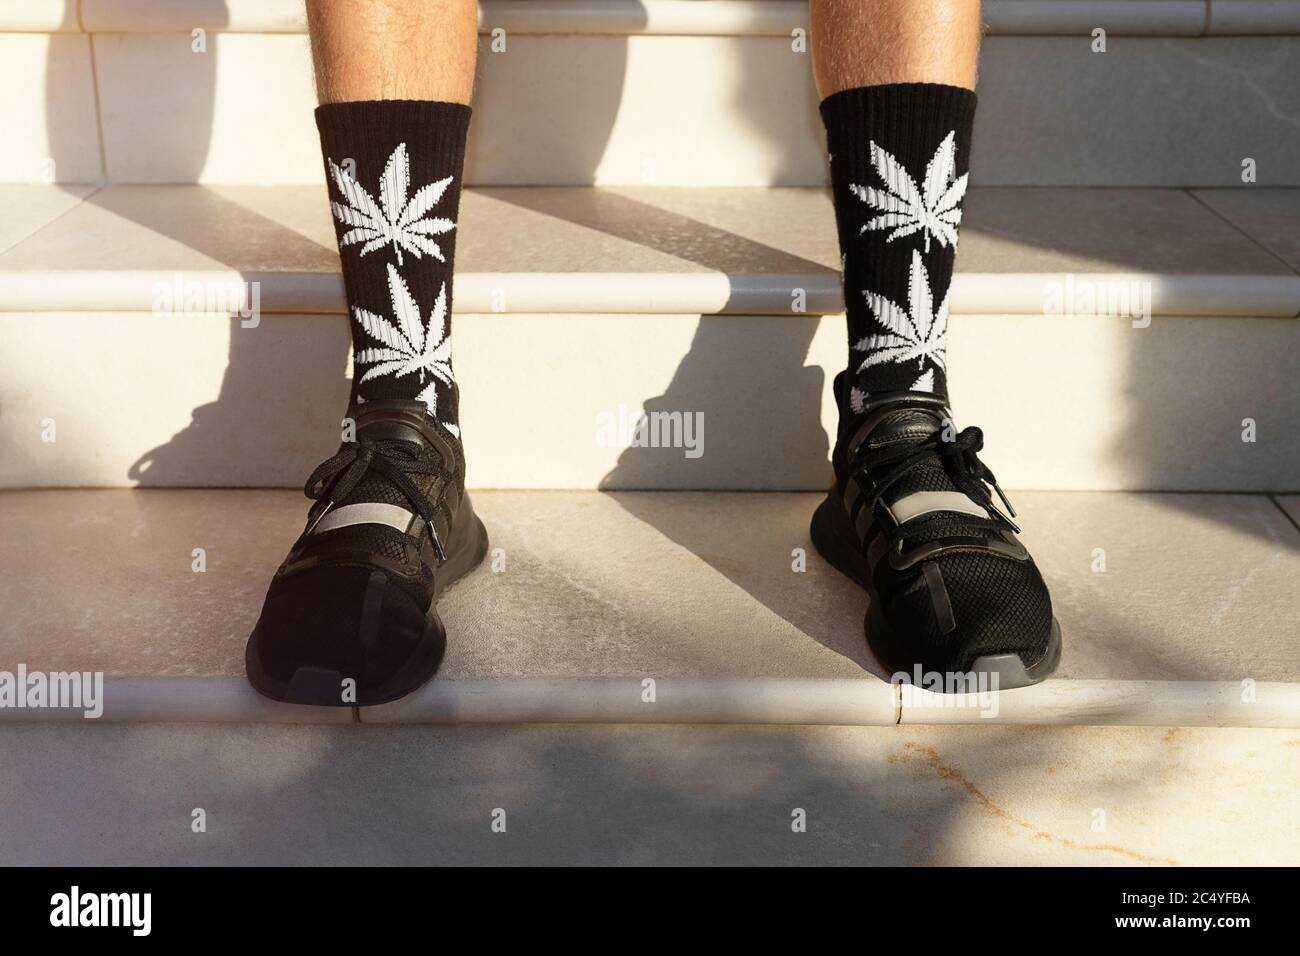 Junge Erwachsene verwenden hohe Socken mit Bildern von Cannabisblättern. Modehintergrund. Stockfoto